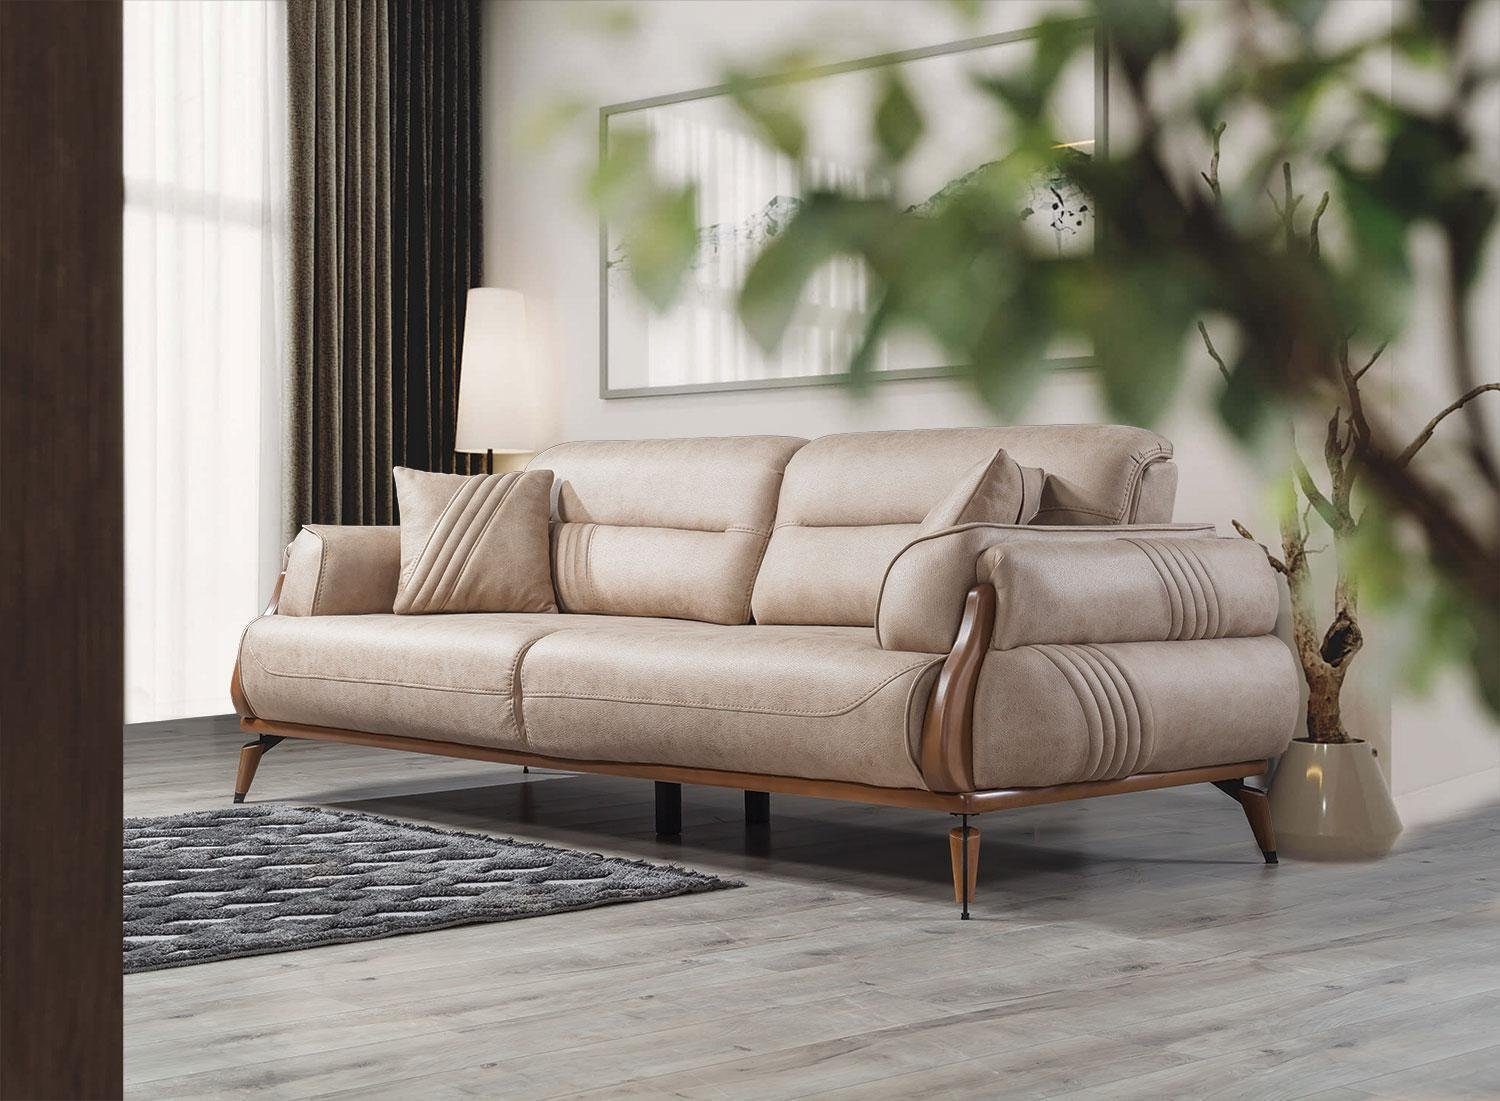 Sofa Neu, Luxus Made in Leder Designer Europa Teile, Beige Sofas Sofa 1 Couchen Polster Dreisitzer JVmoebel